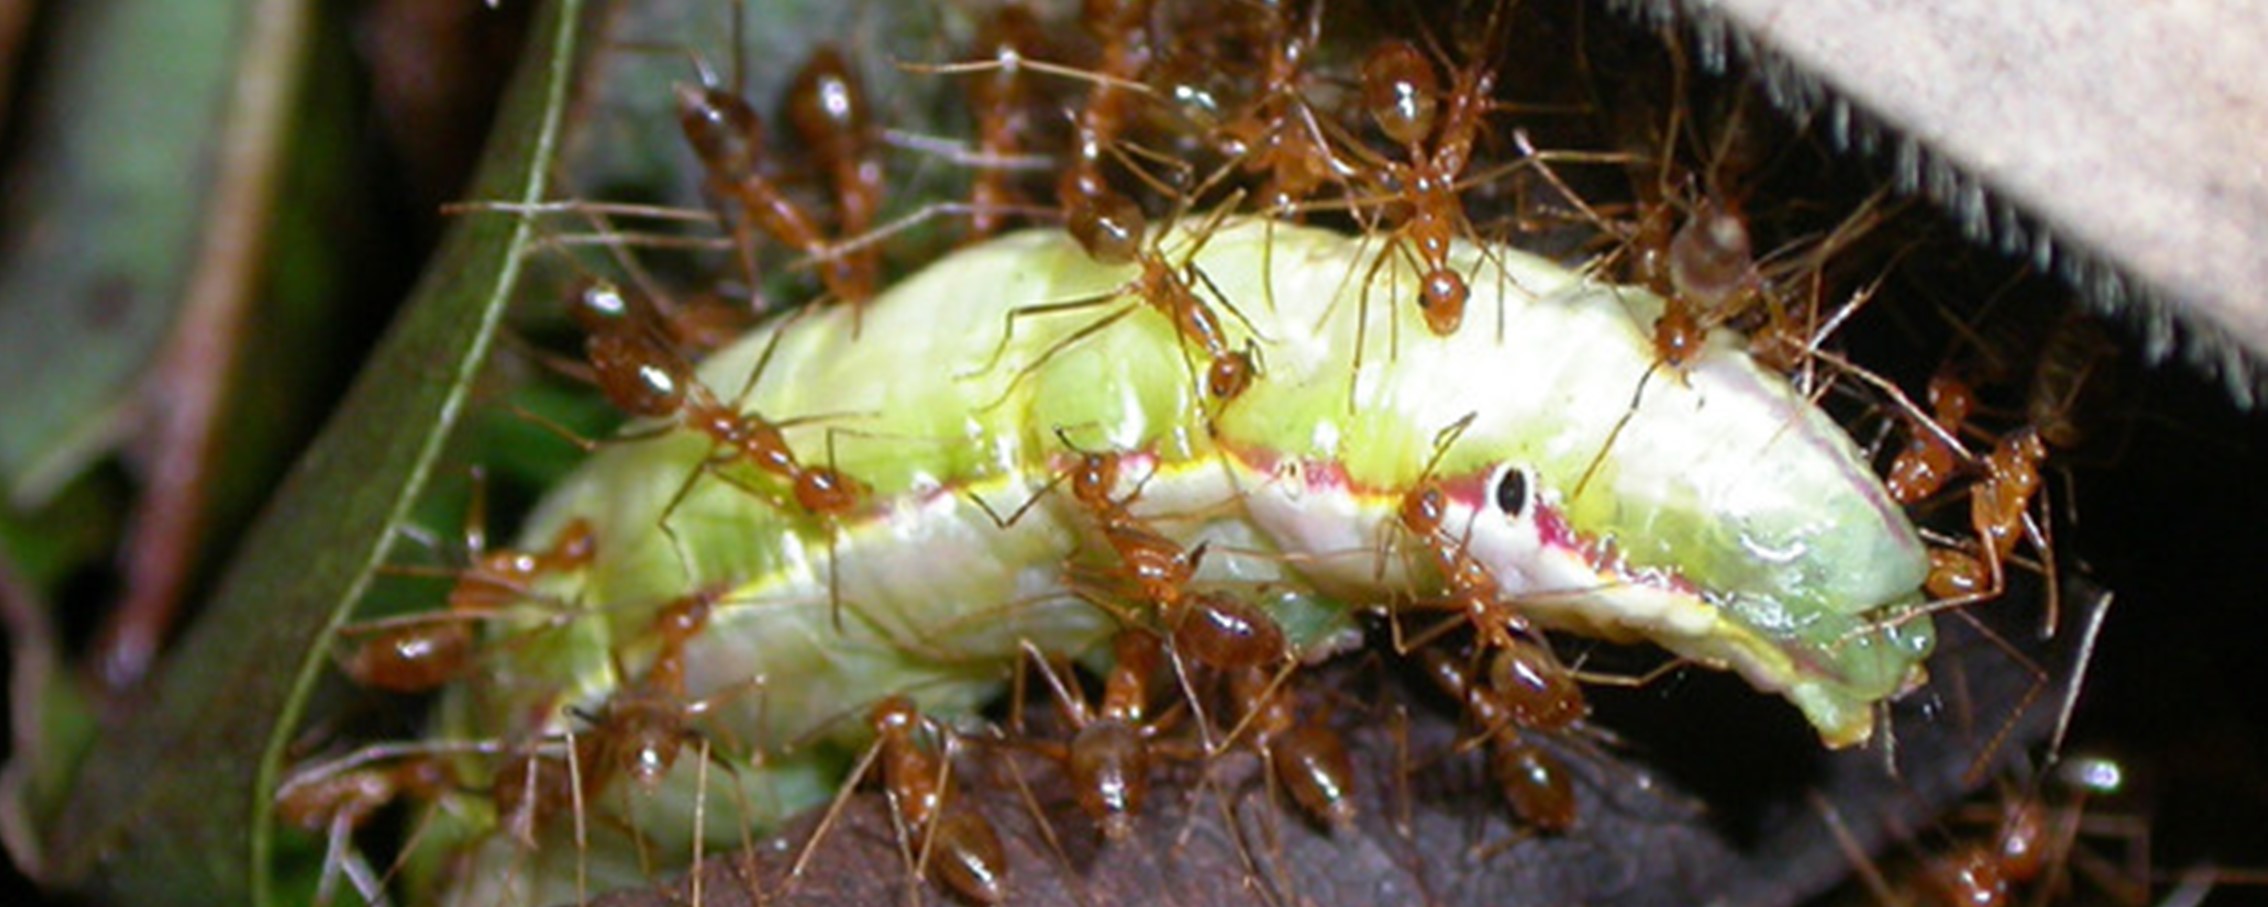 Eine Gruppe Ameisen transportiert eine Schmetterlingsraupe.